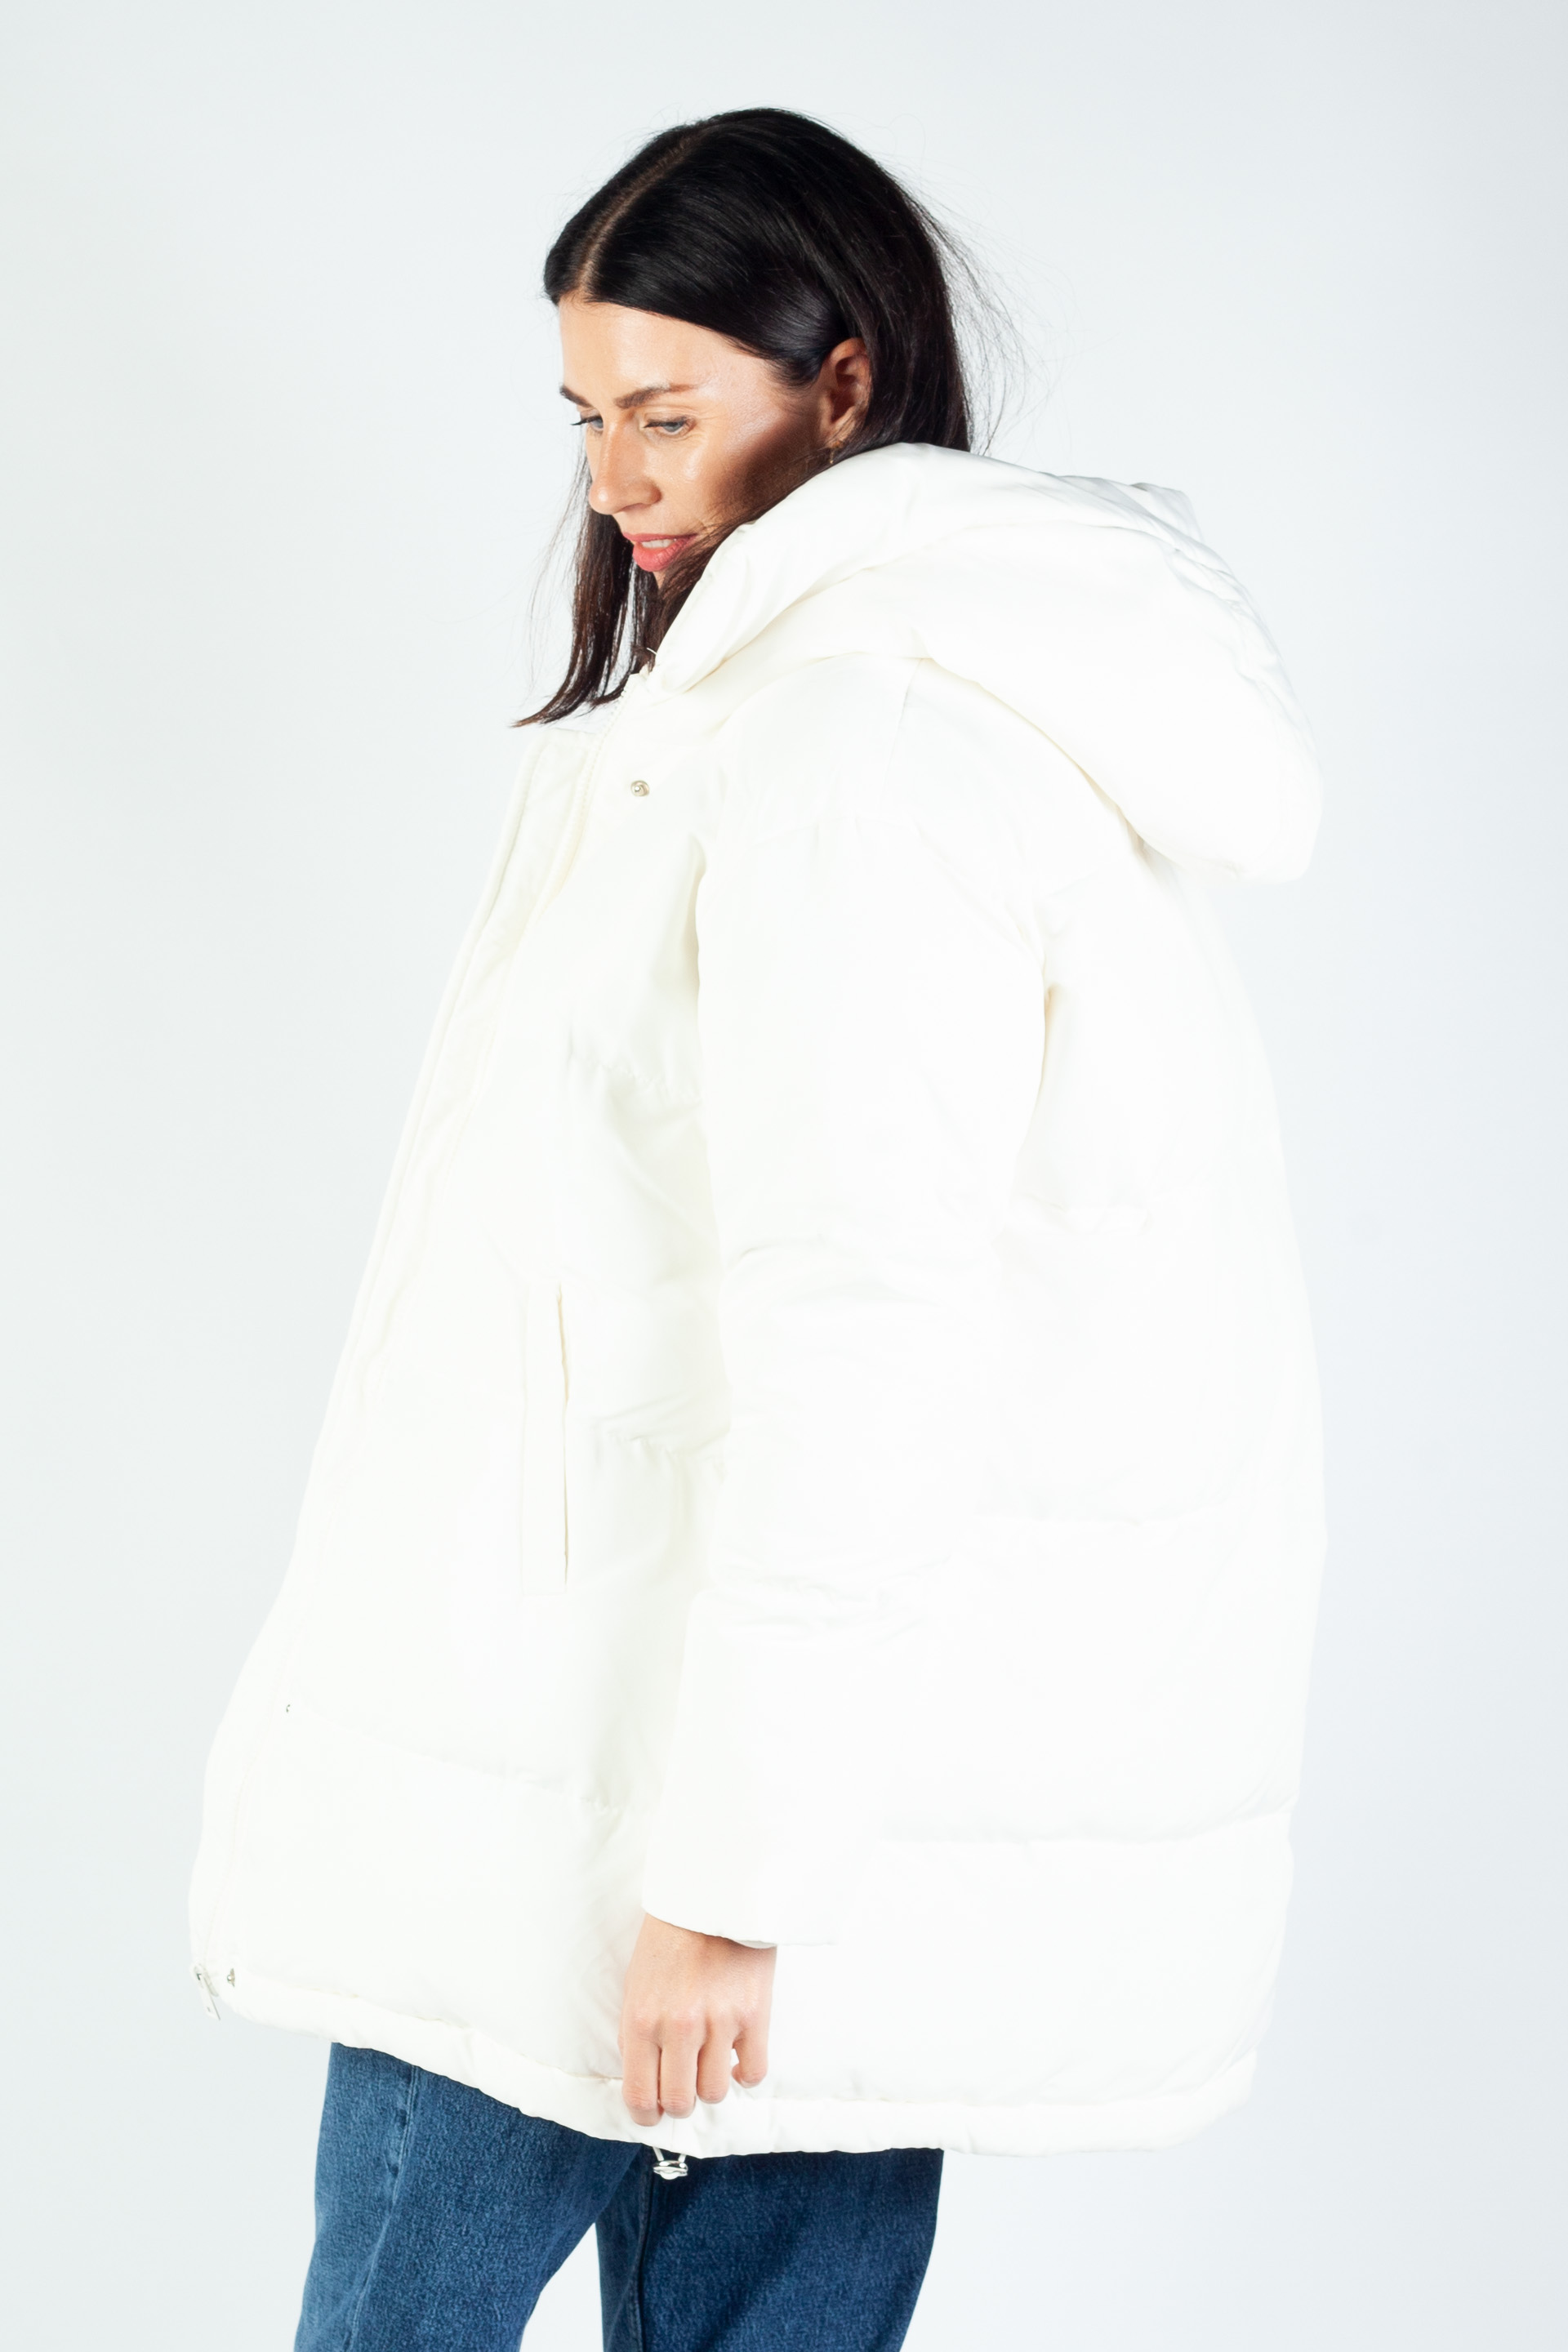 Winter jacket ATTENTIF PK-2224-WHITE